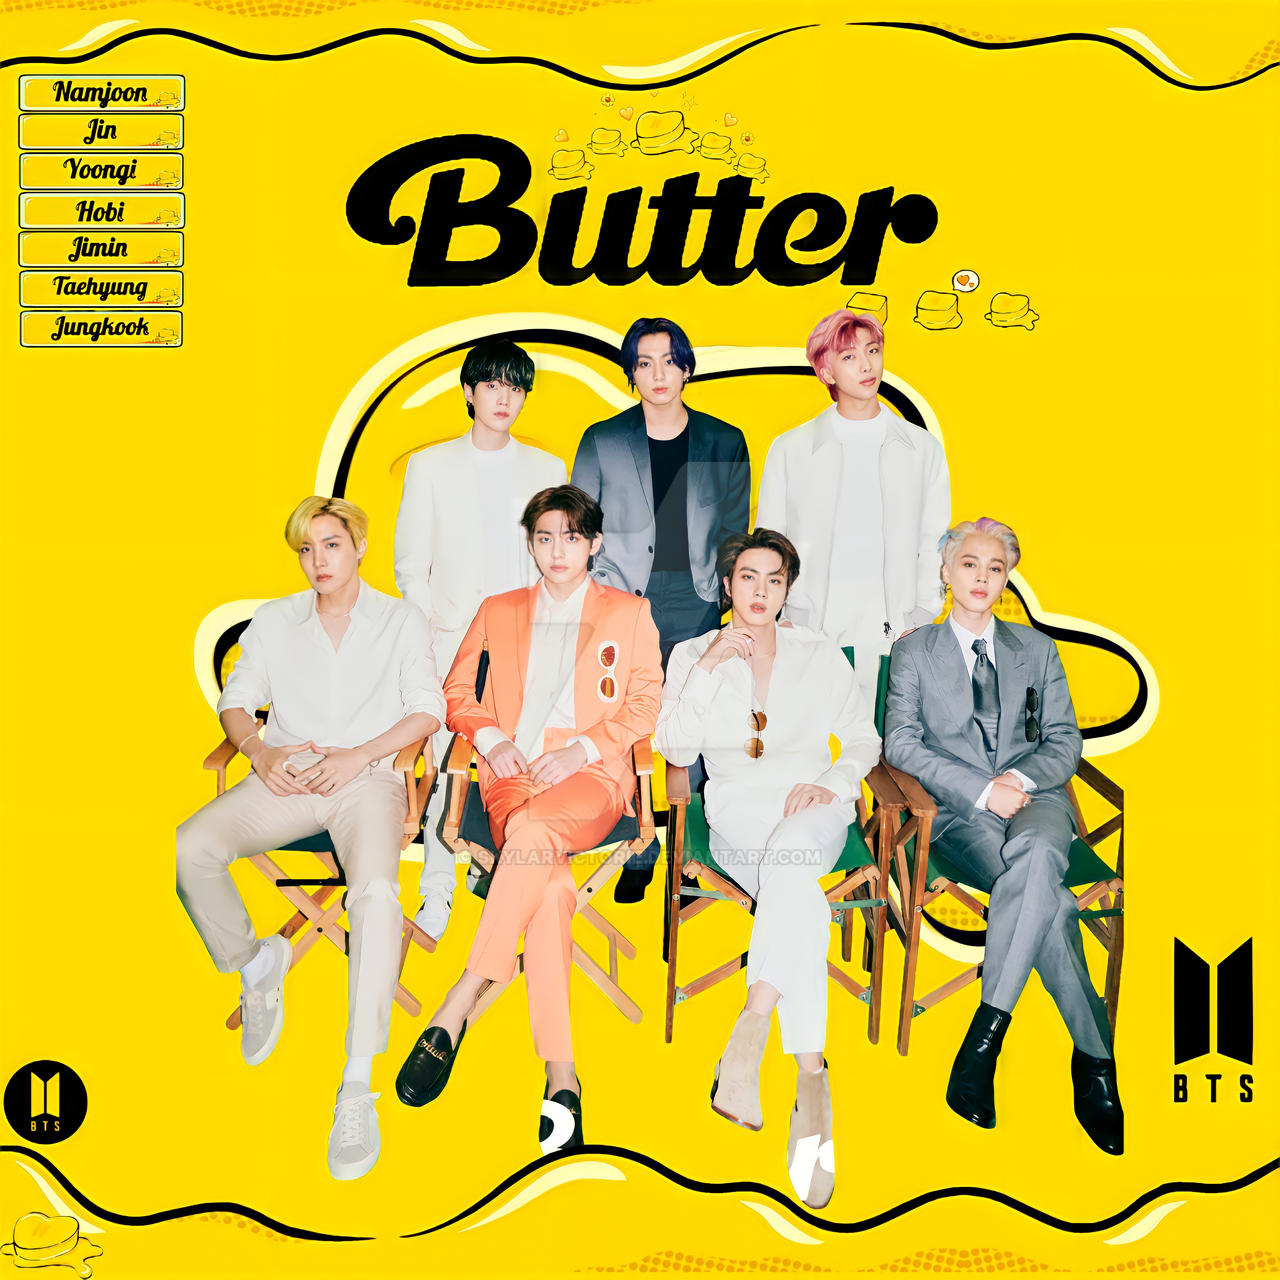 Butter album bts